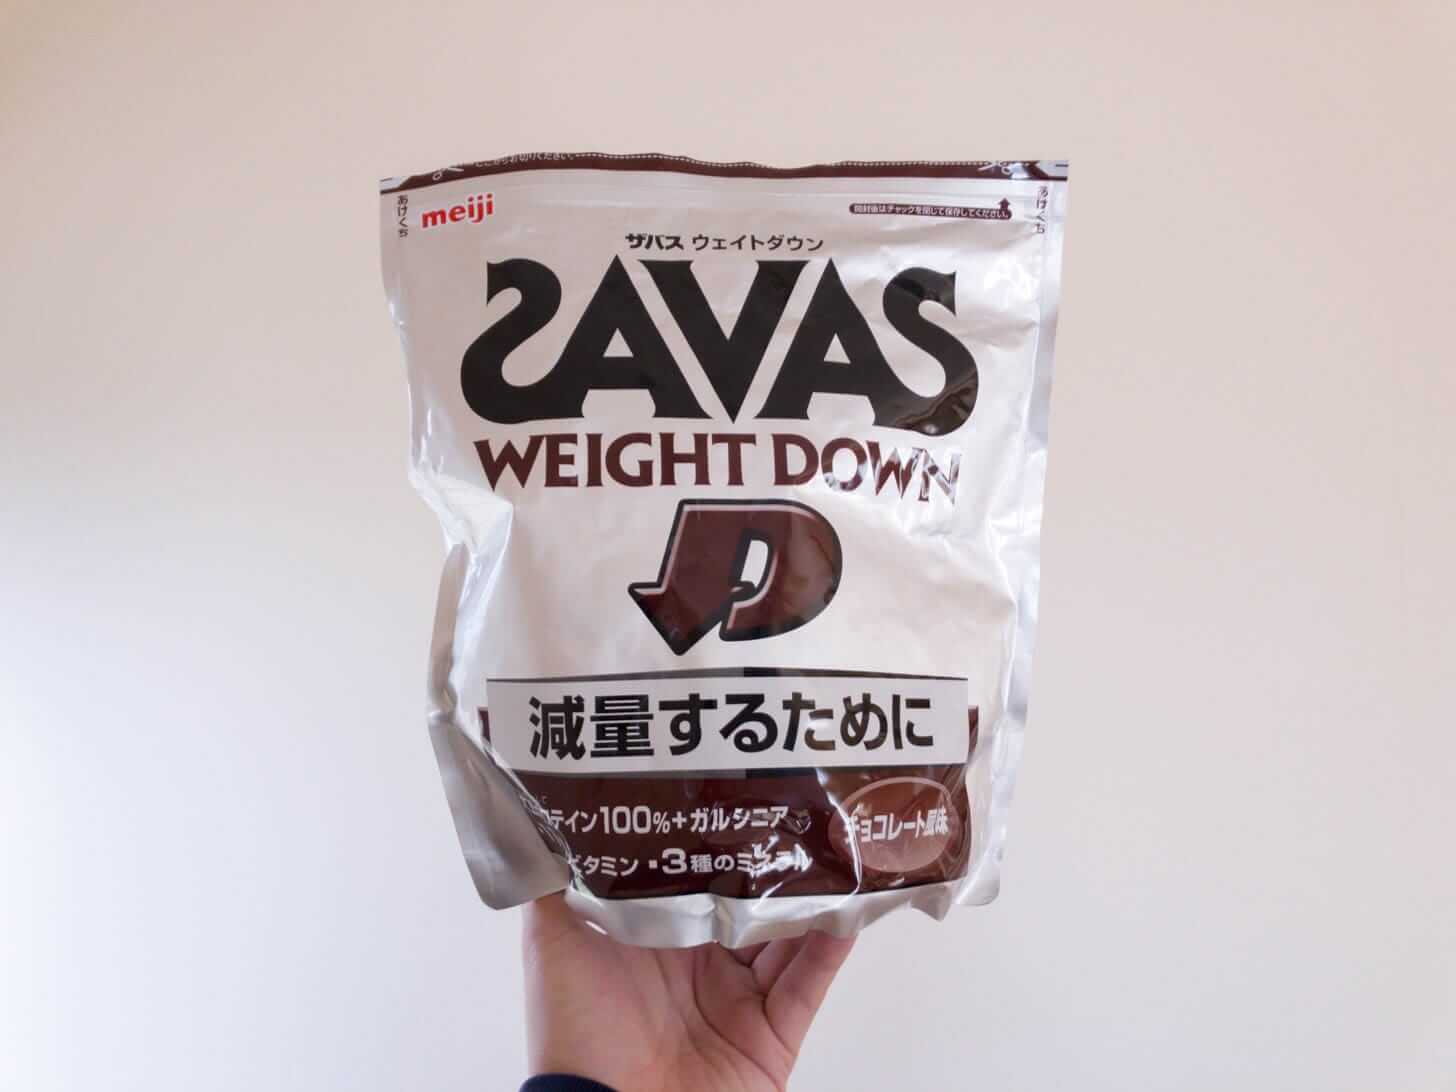 ザバス(SAVAS) ウェイトダウン チョコレート風味